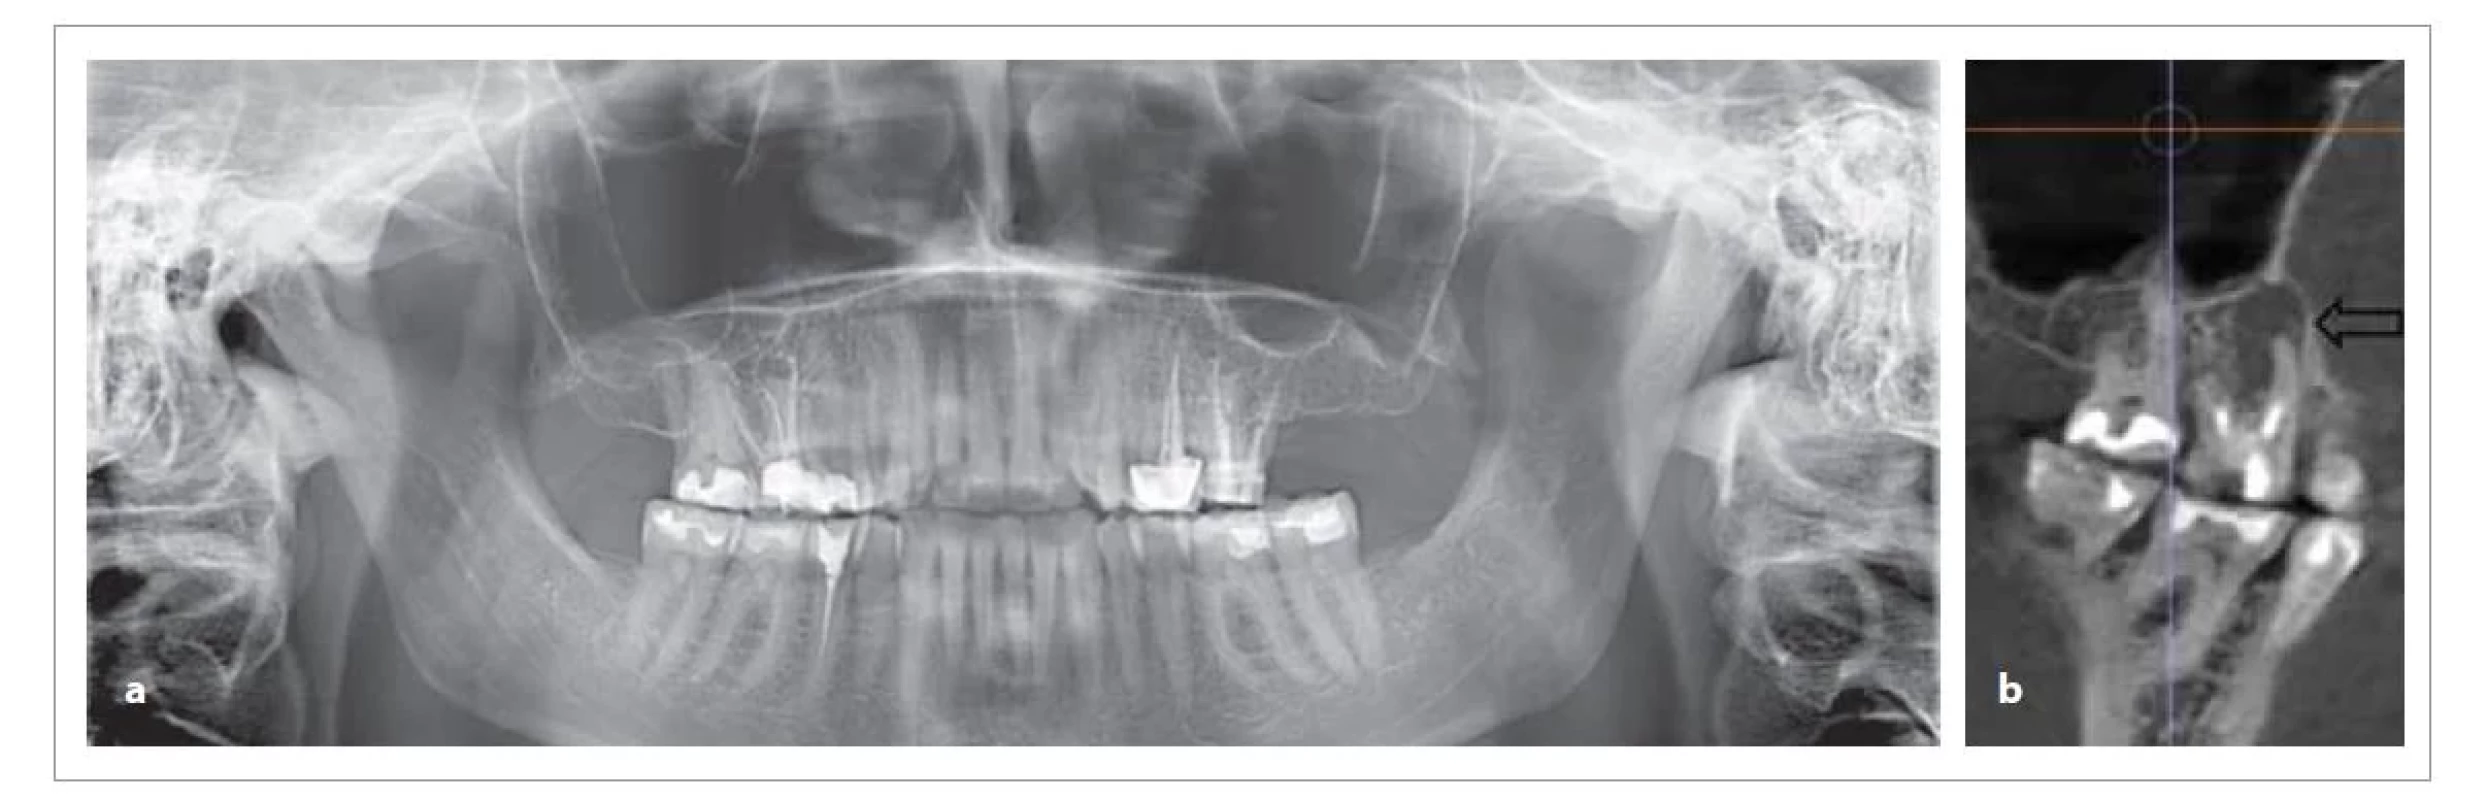 Srovnání OPG a CBCT u téhož pacienta, možnost diagnostiky periapikální patologie zubu 16 z OPG snímku je
velmi omezená a snadno přehlédnutelná, zatímco z CBCT vyšetření je nález zcela jednoznačný (a – OPG, b – CBCT).<br>
Fig. 1. Comparison of OPG and CBCT in the same patient, the possibility of diagnosing periapical lesion of tooth 16 from the
OPG is very limited and easily overlooked, while from the CBCT examination the finding is quite clear (a – OPG, b – CBCT).